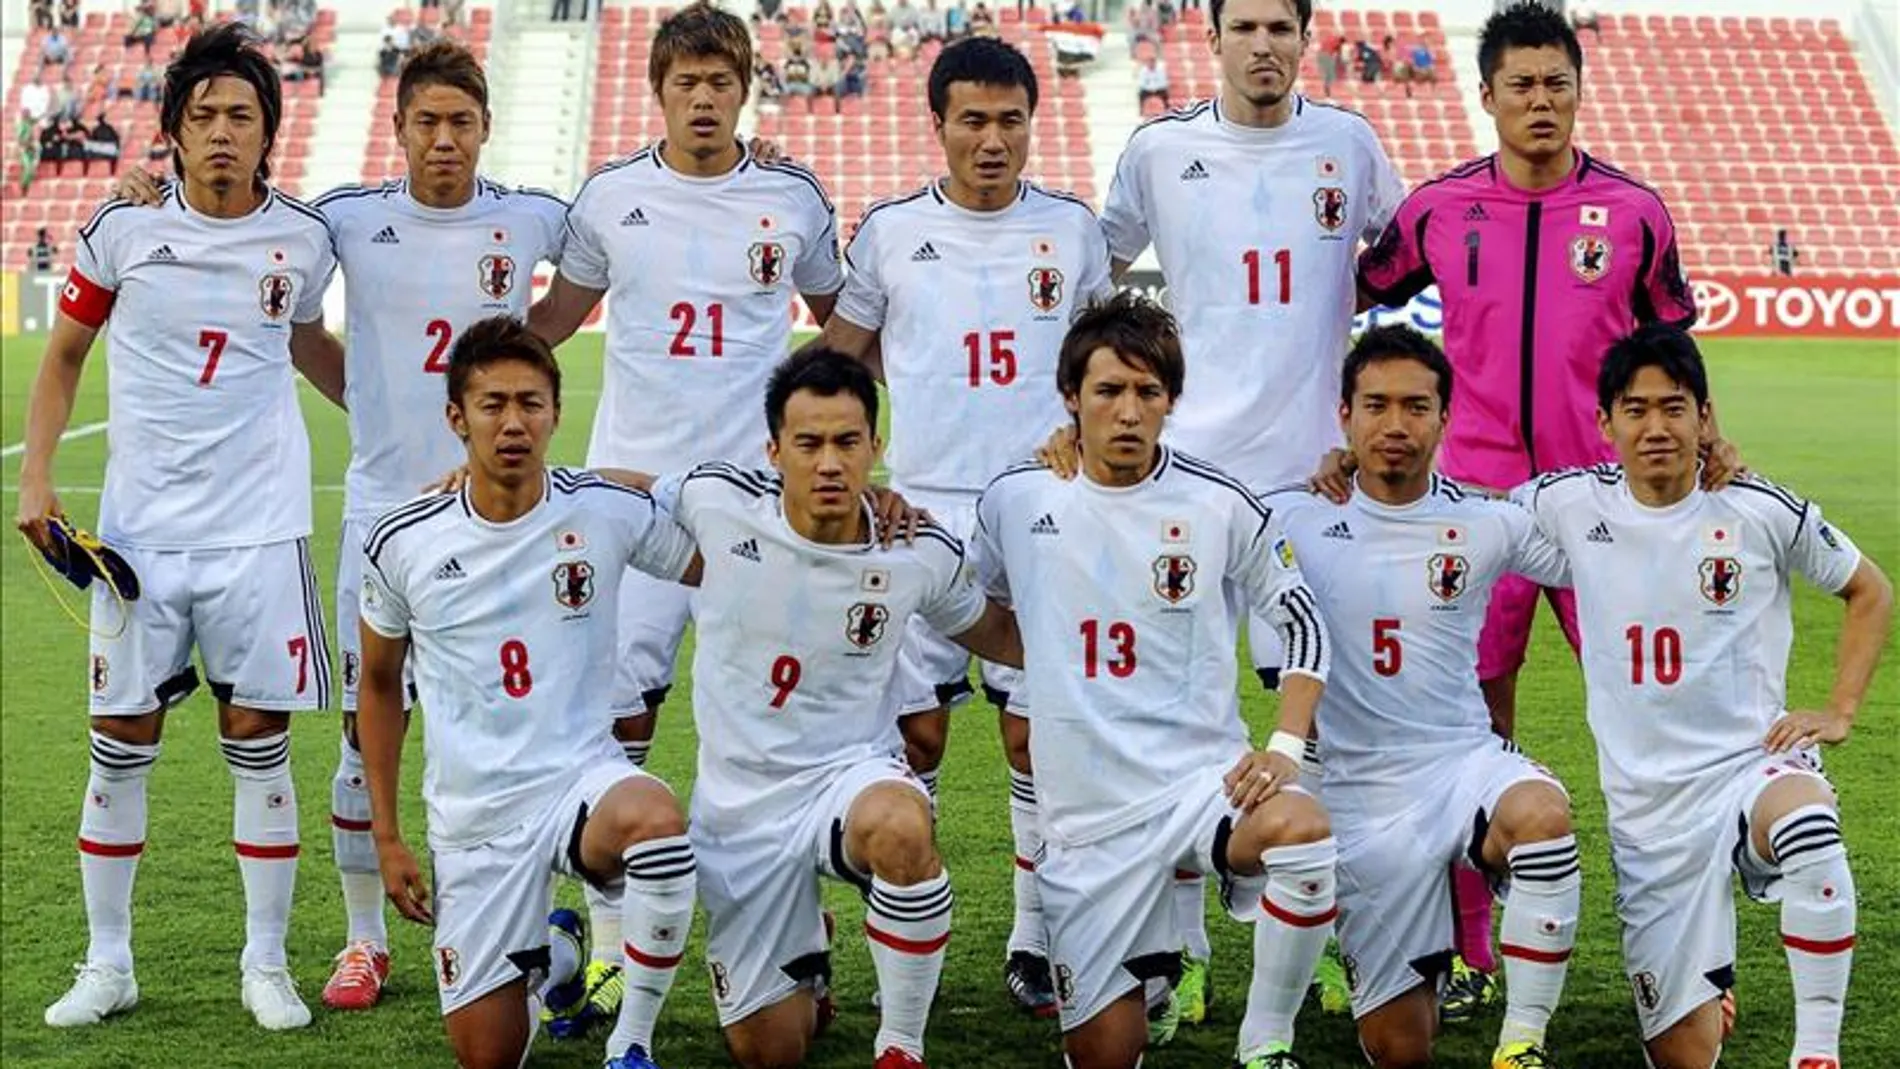 Los jugadores de la selección de Japón posan antes del partido frente a Irak disputado en junio para la clasificación para el Mundial.